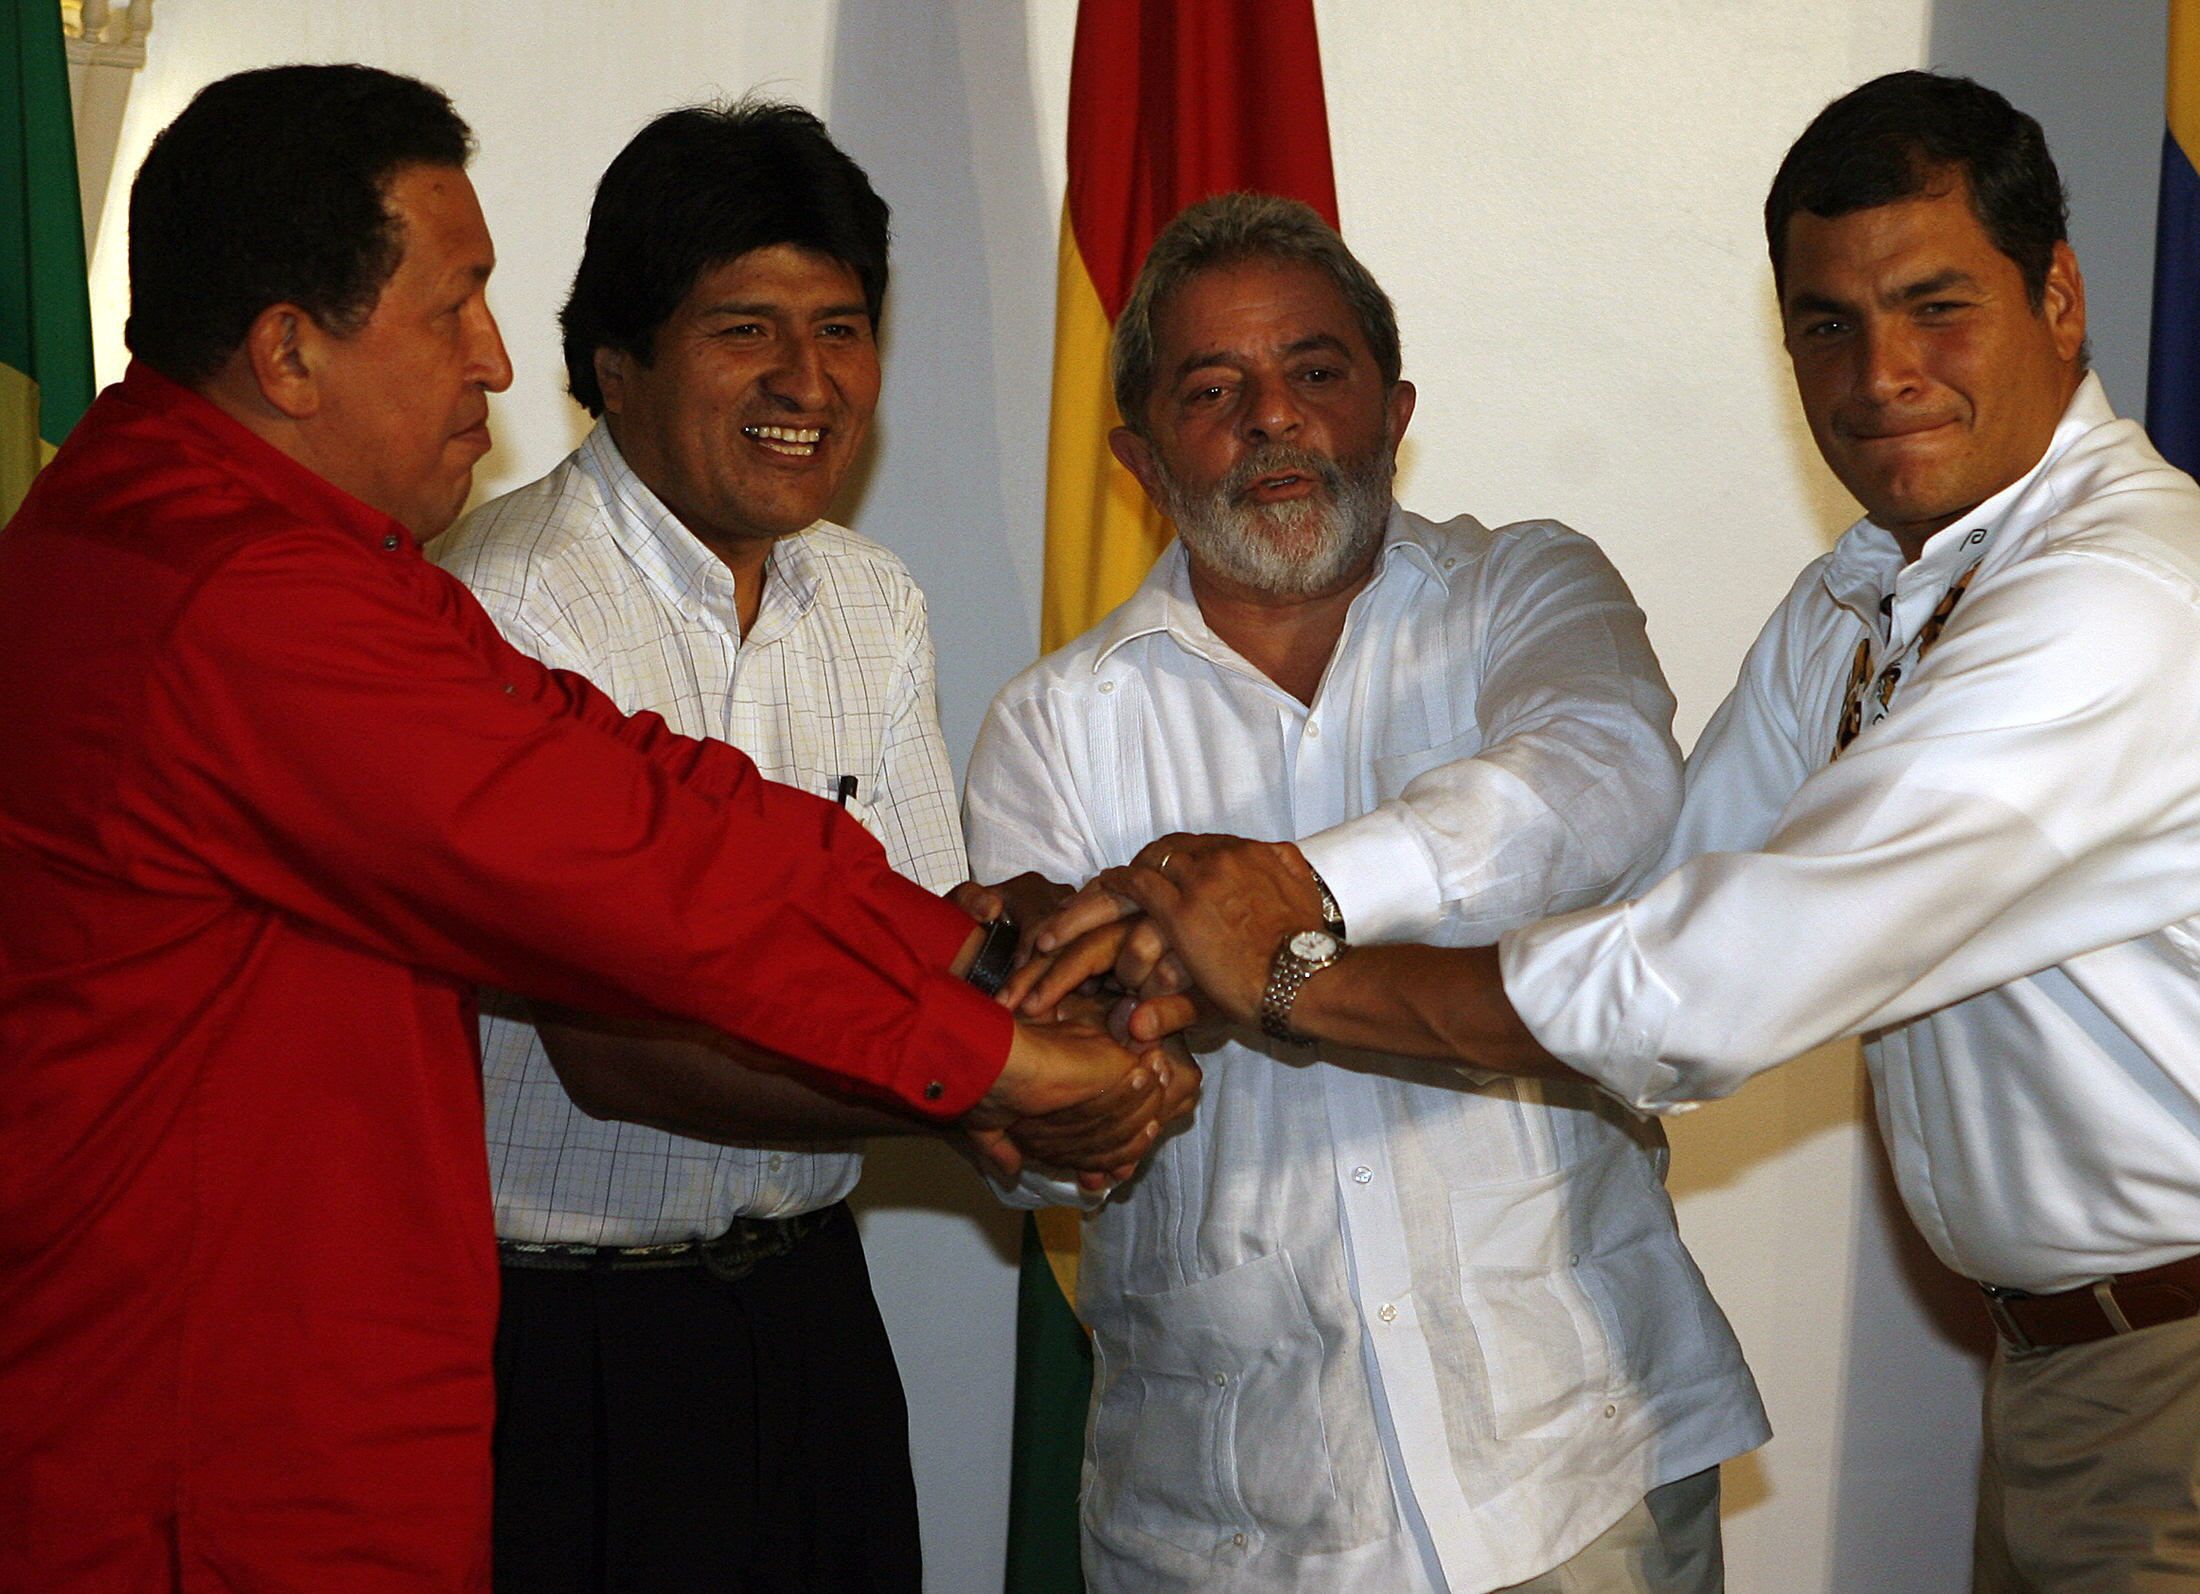 Junto a otros líderes progresistas impulsó mecanismos de integración latinoamericana.